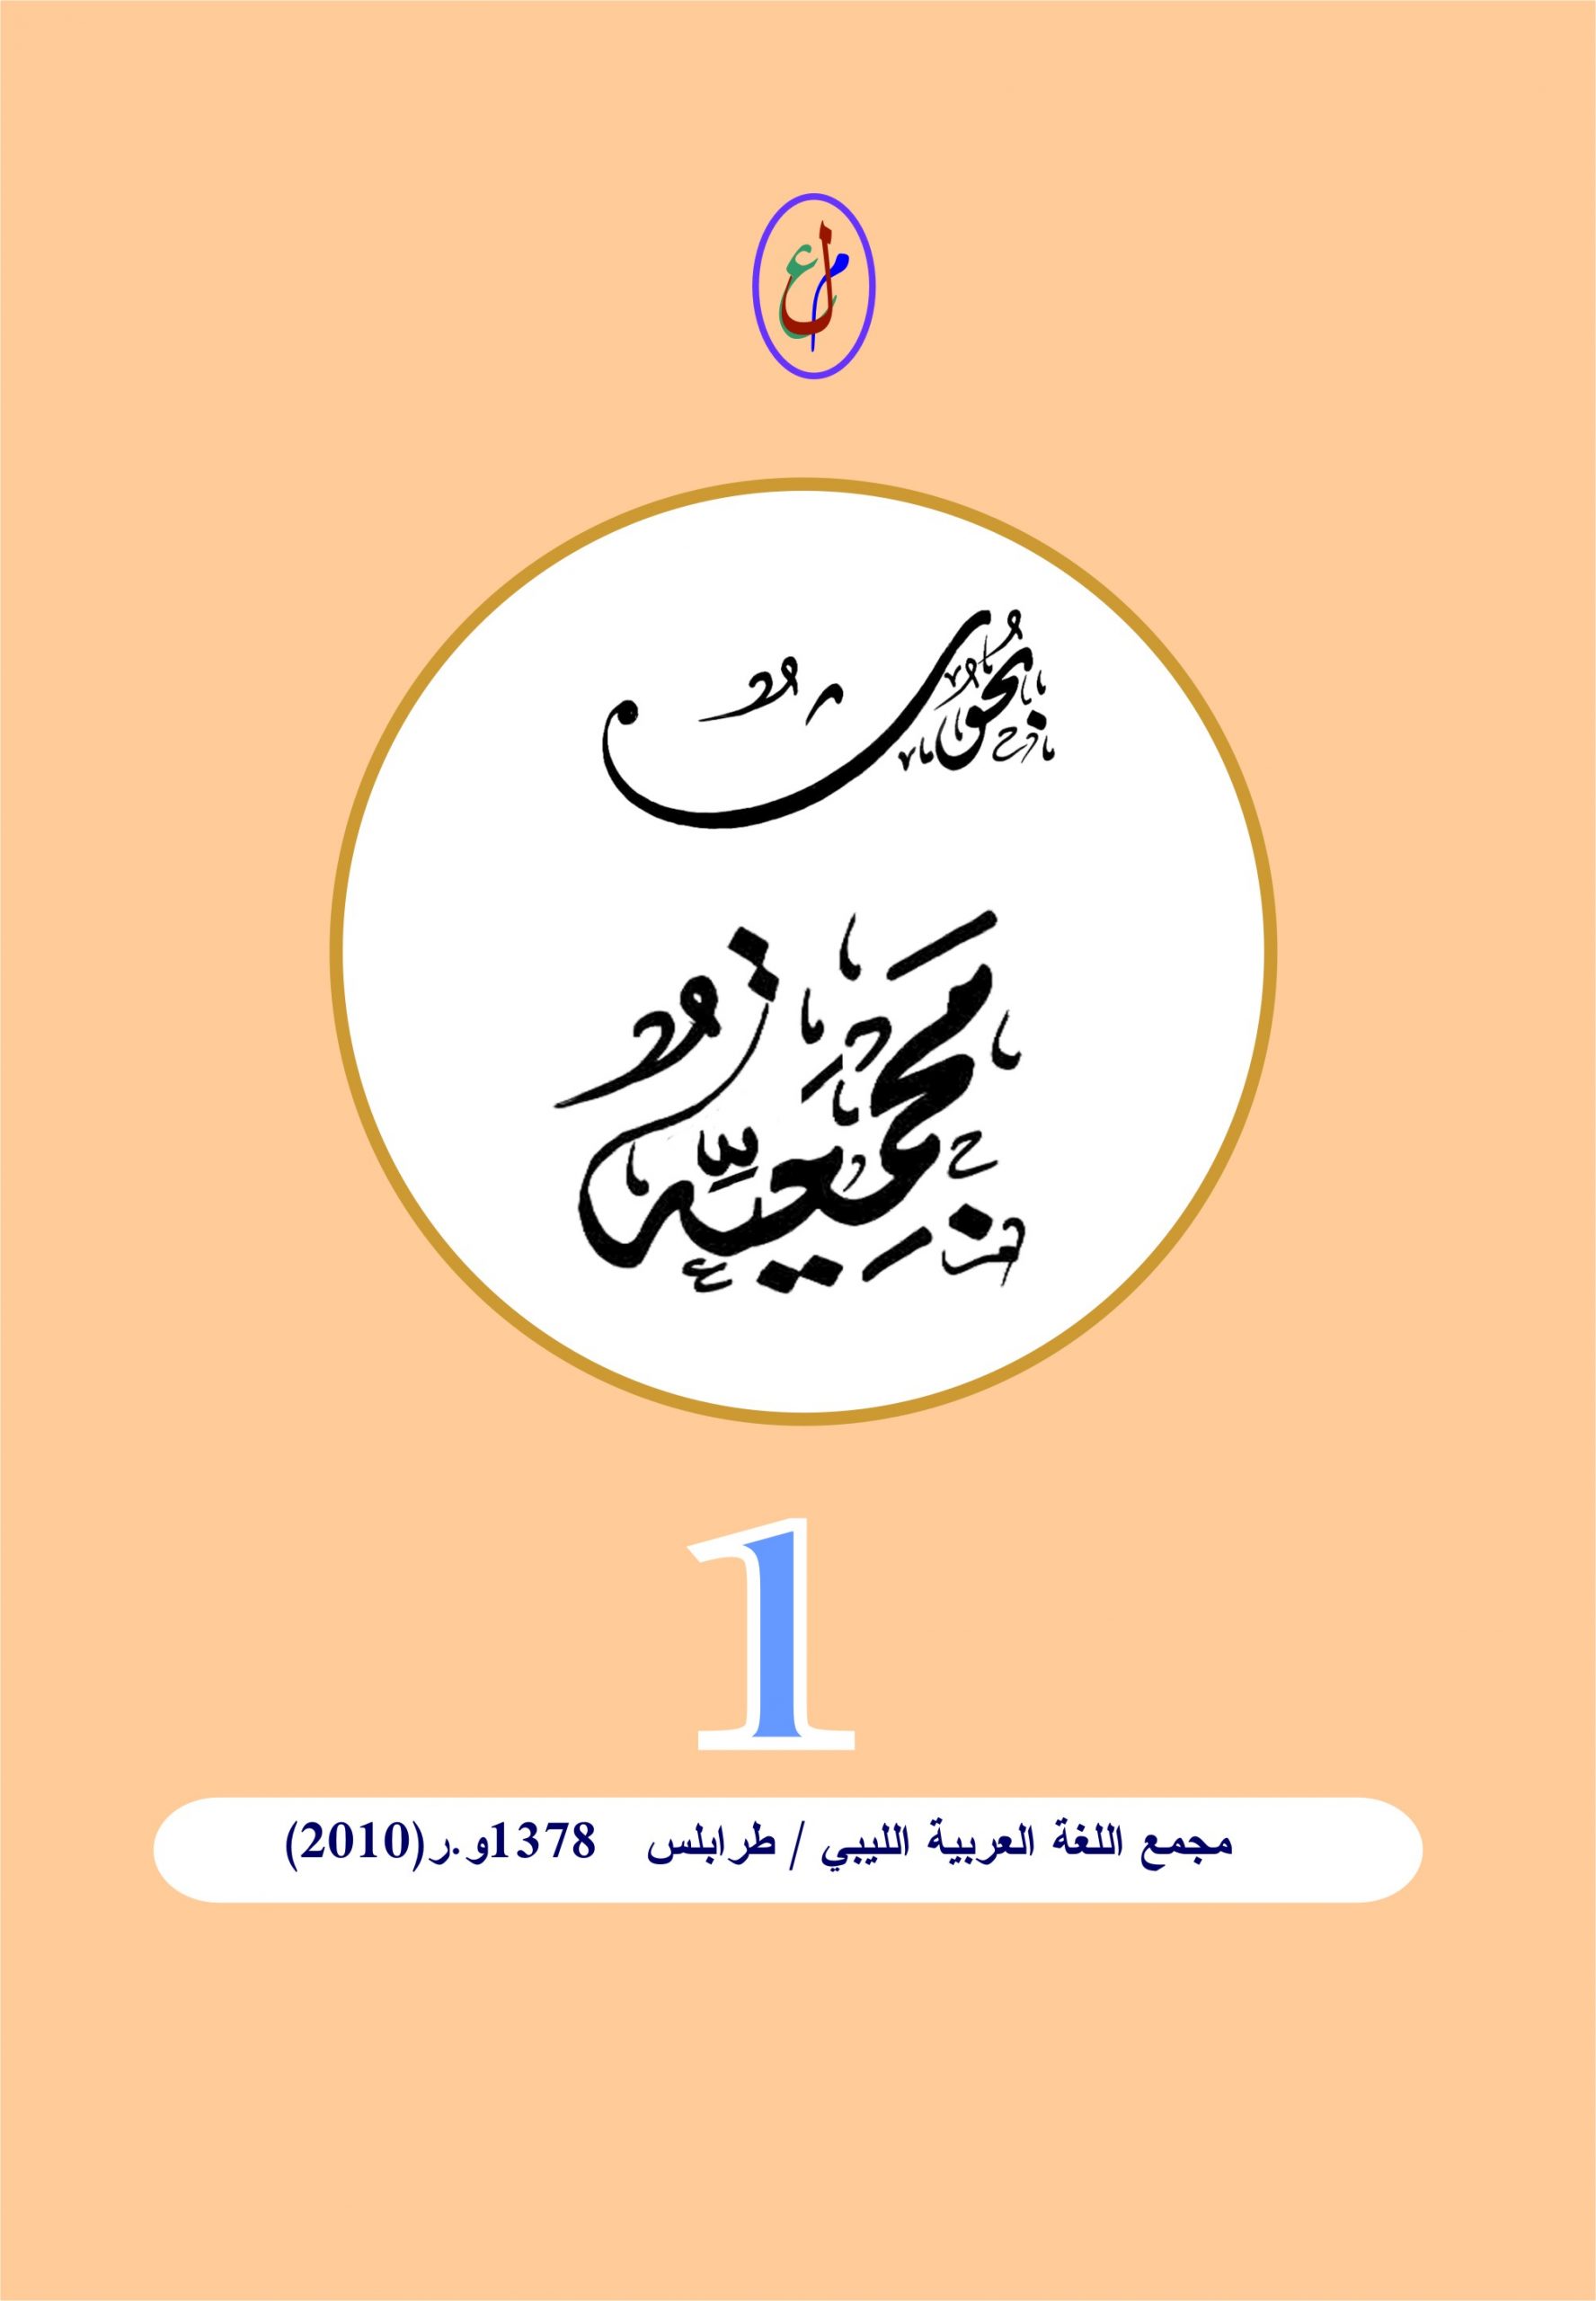 مجمع اللغة العربية الليبي / طرابلس - 1378و.ر  (2010)